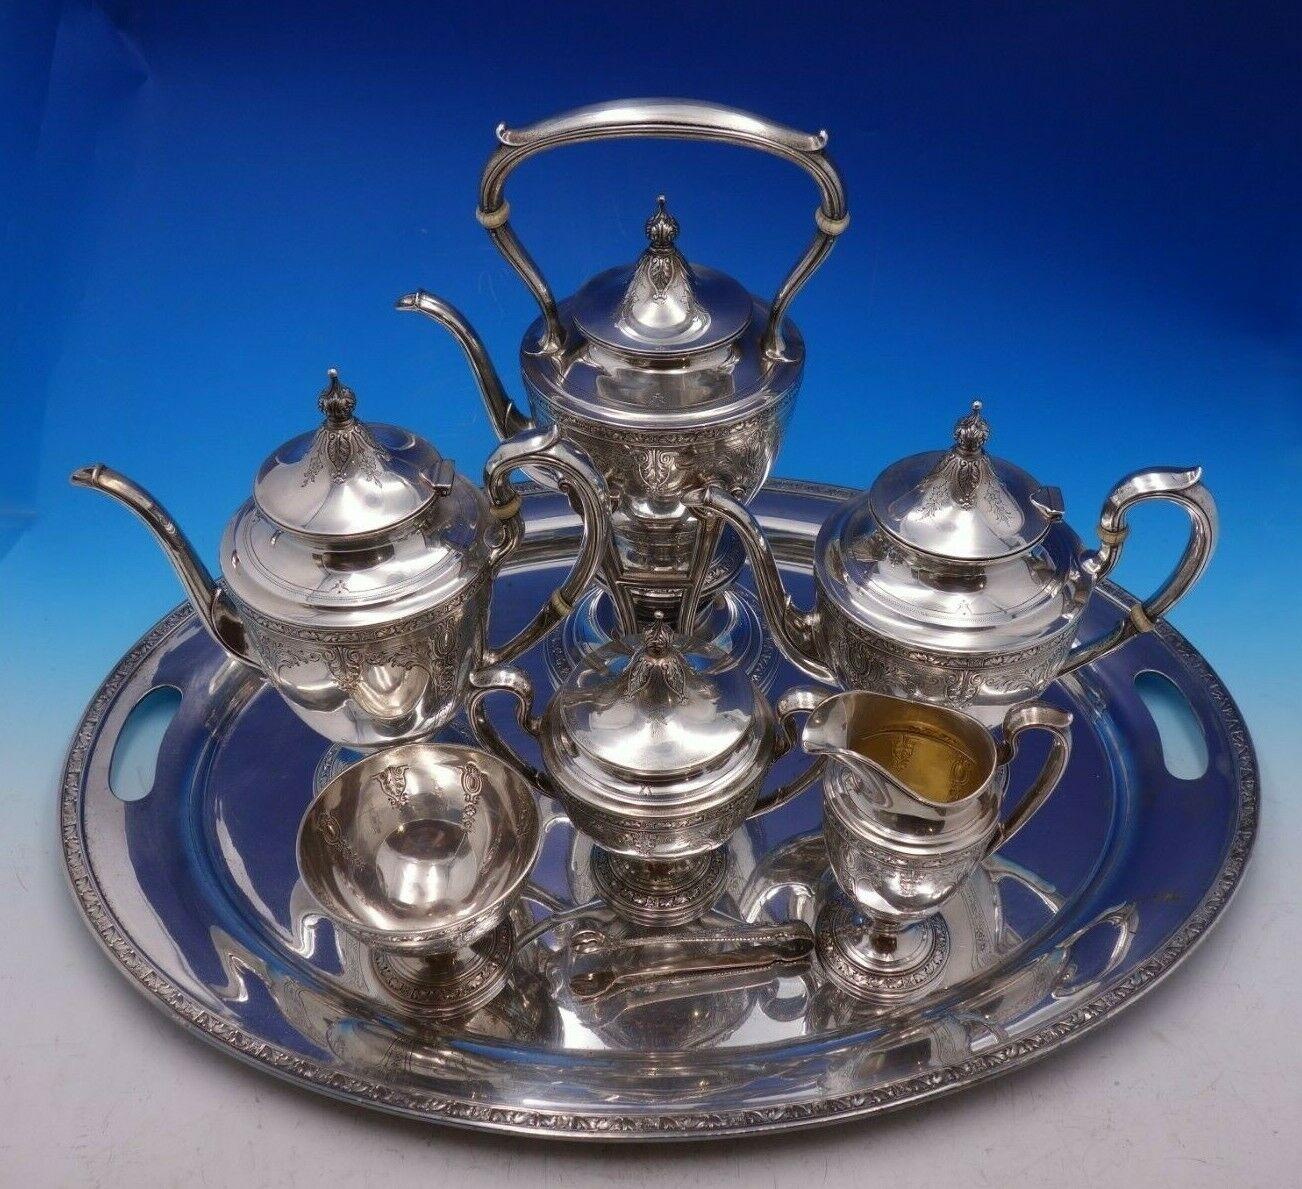 Aschenputtel von Gorham

Schöne Cinderella von Gorham Sterling Silber sieben Stück Tee-Set mit Silberplatte Tablett. Dieses Set enthält:

1 - Kessel auf Ständer: Markiert #20206, misst 13 1/2